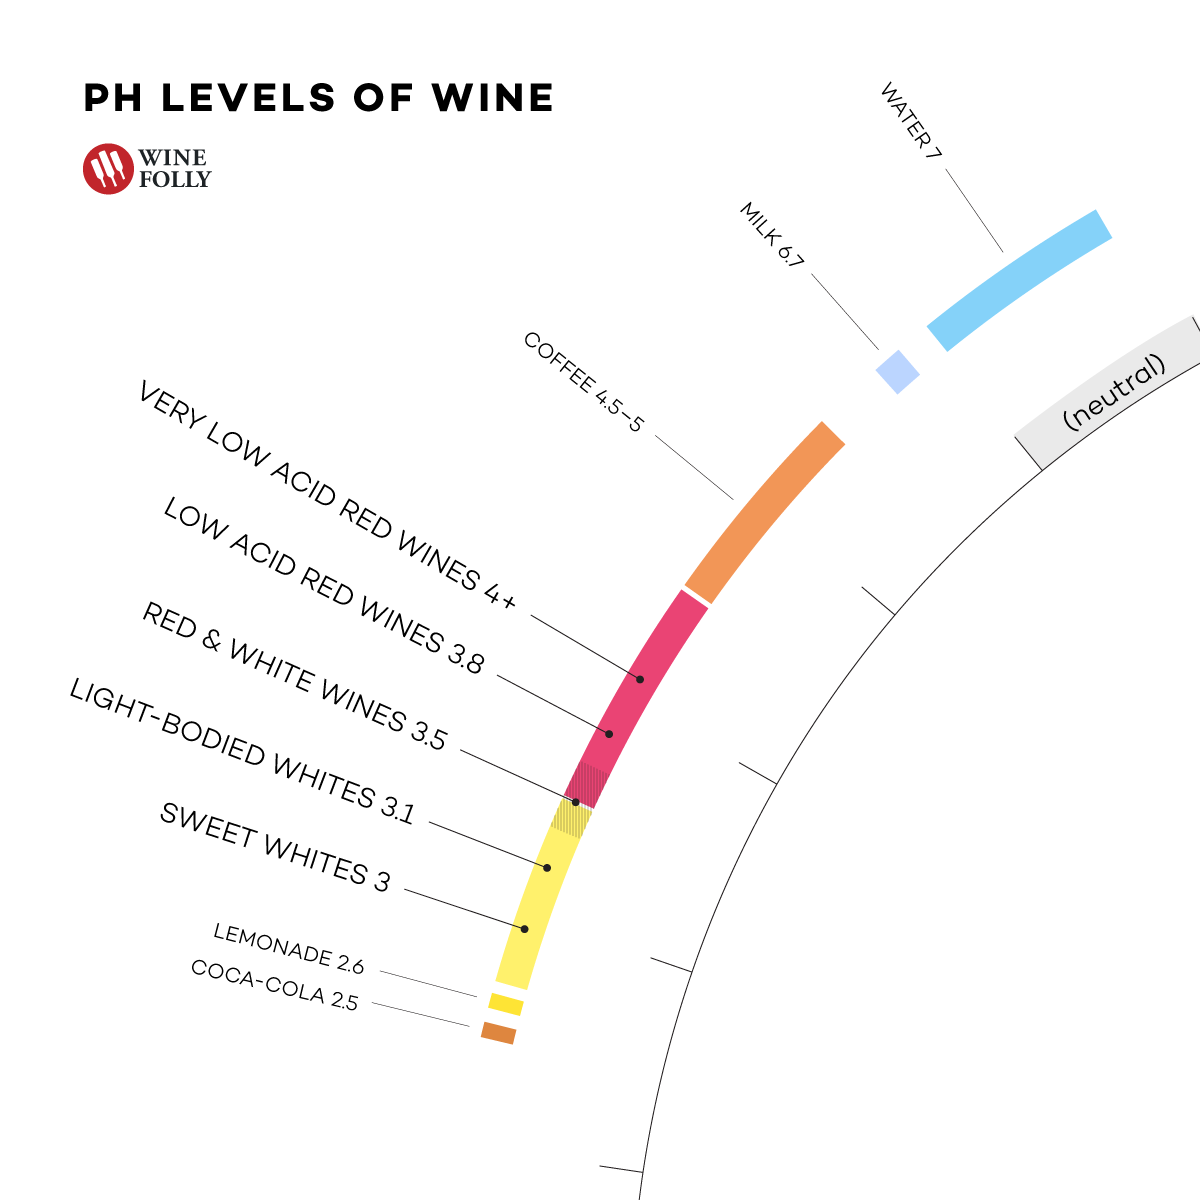 rūgštumas-ph-lygis-vynas ir gėrimai